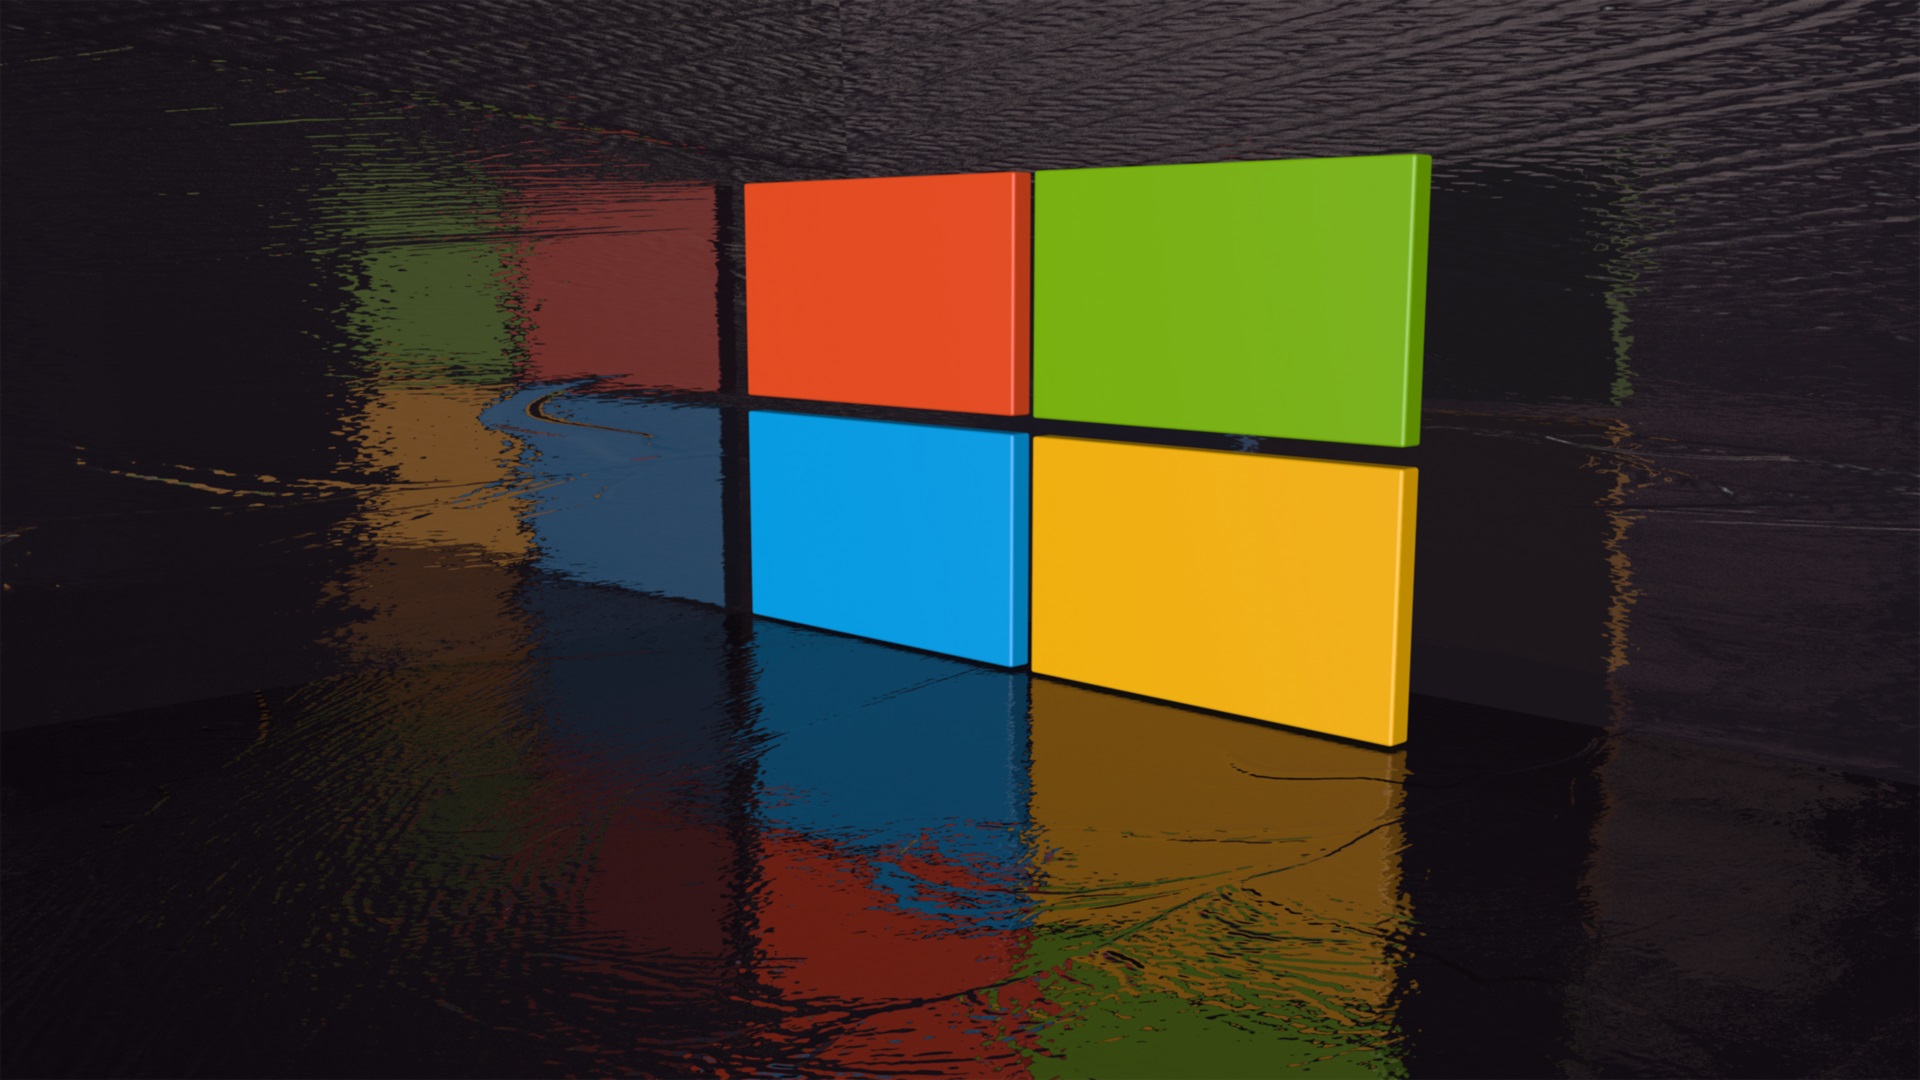 Hình nền Windows 8 Công nghệ: Hãy khám phá giới công nghệ thông qua những hình nền Windows 8 đầy ấn tượng và sáng tạo. Bộ sưu tập này sẽ khiến cho bạn hiểu rõ hơn về tiềm năng và sức mạnh của Windows 8 trên mọi thiết bị.